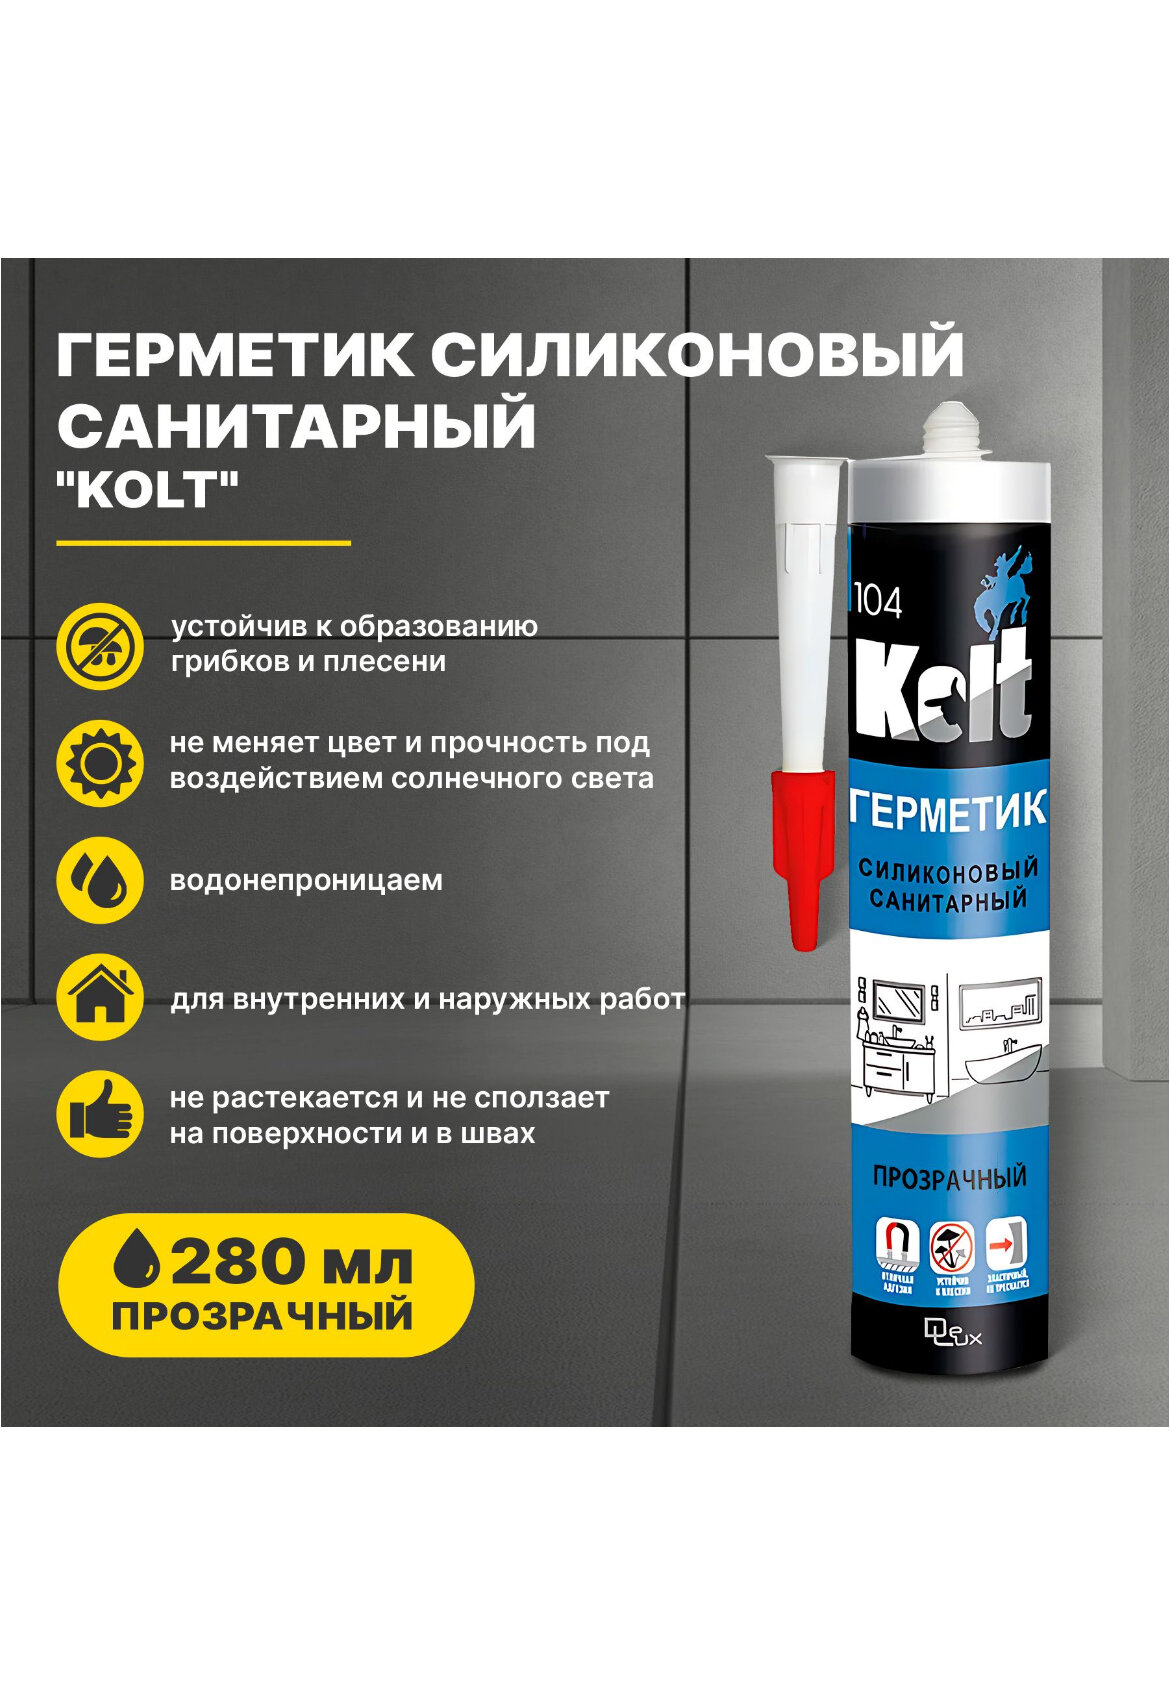 Герметик KOLT силиконовый санитарный прозрачный